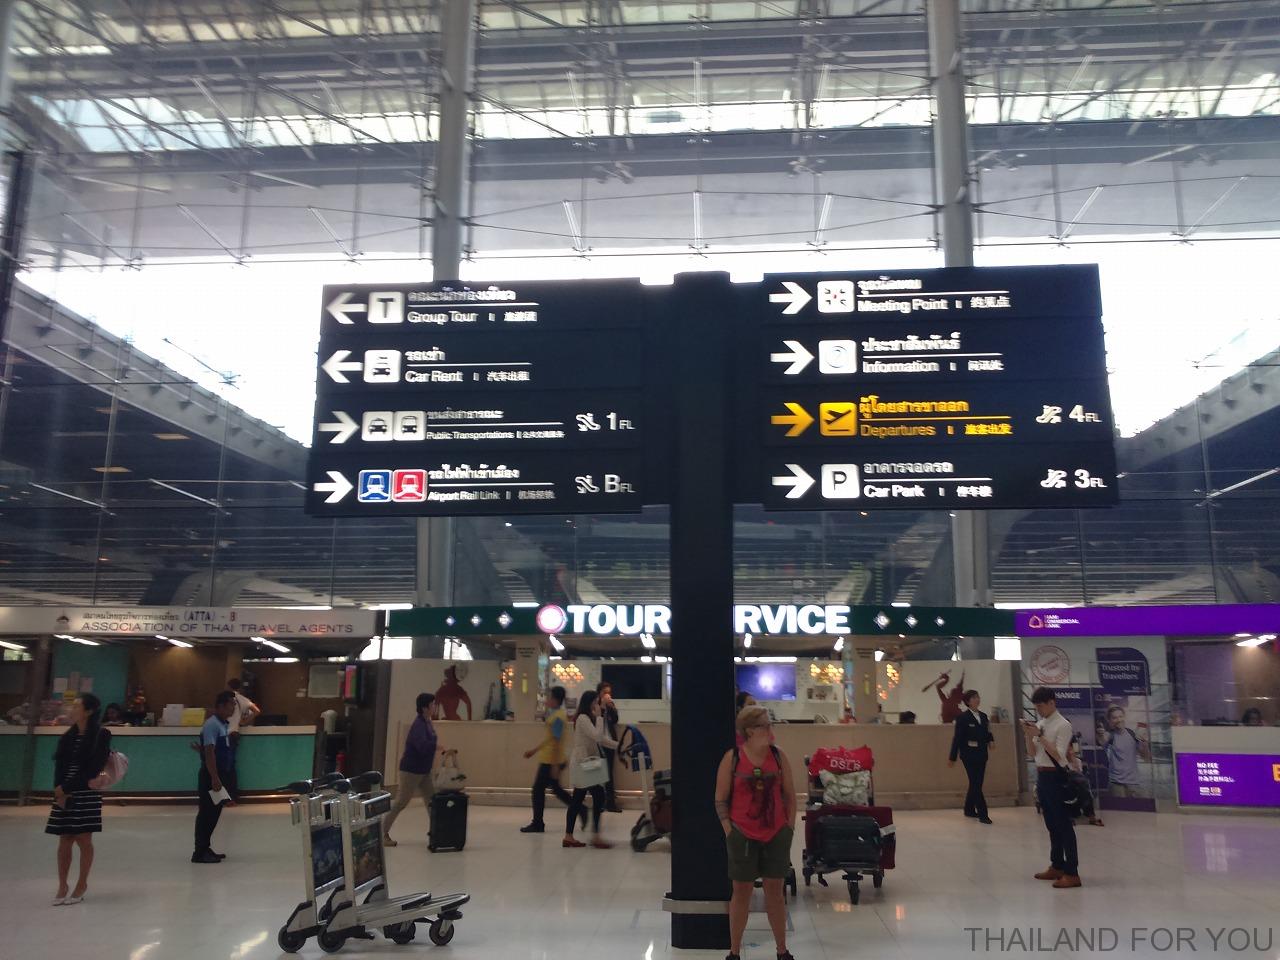 スワンナプーム国際空港からエアポートリンクで市内に出て地下鉄(MRT)に乗り換える方法